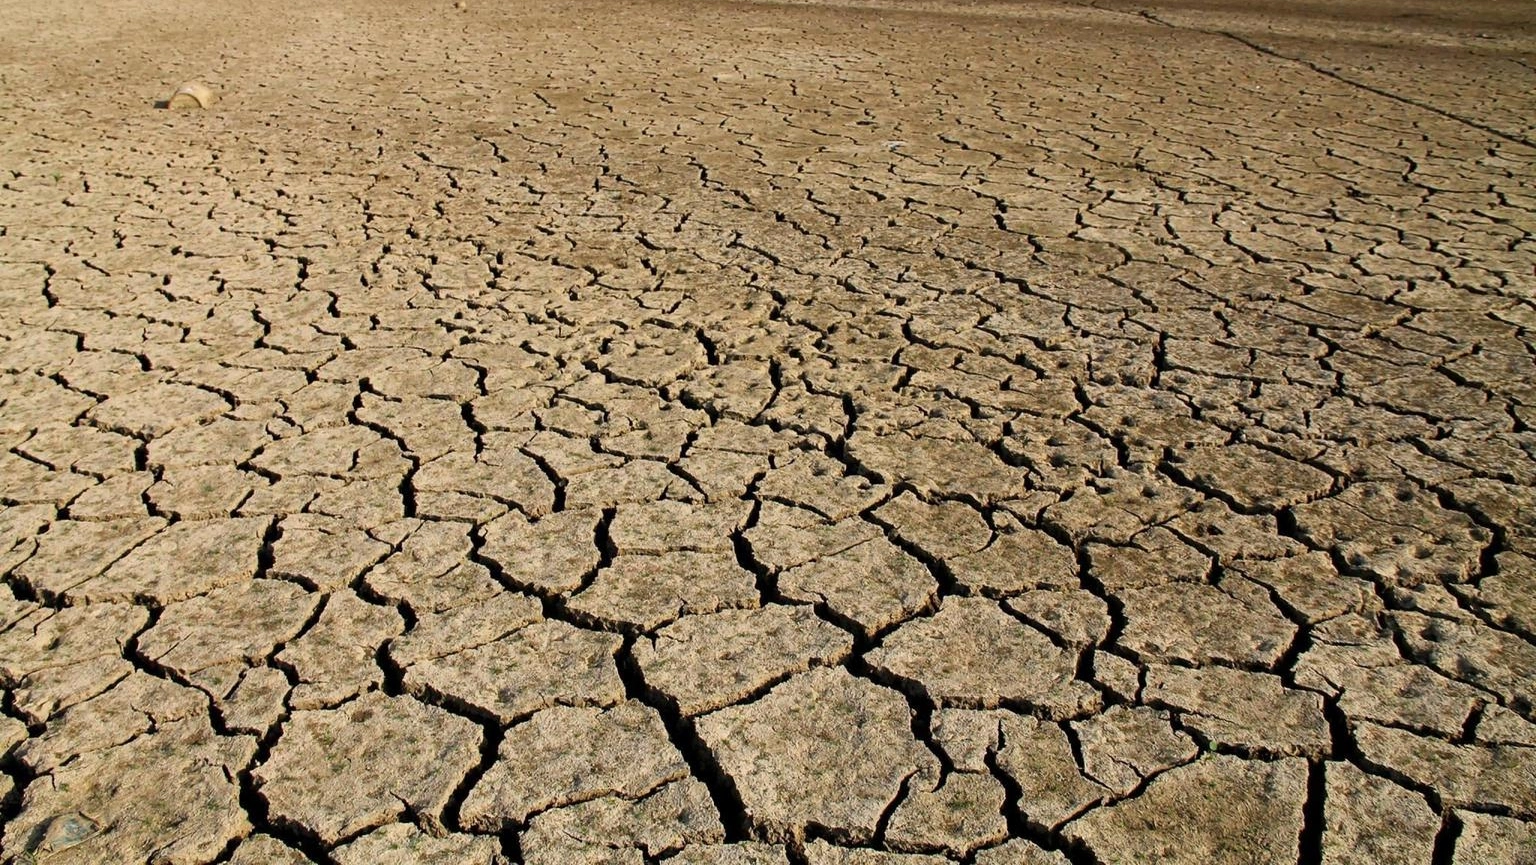 Risorse idriche razionate in molte regioni, la situazione peggiore in Sicilia con “terreni bruciati come dune nel deserto”, scrive il New York Times. Nell’isola risorse già razionate e appena 414 mm di pioggia in 12 mesi, come nella grande siccità del 2002